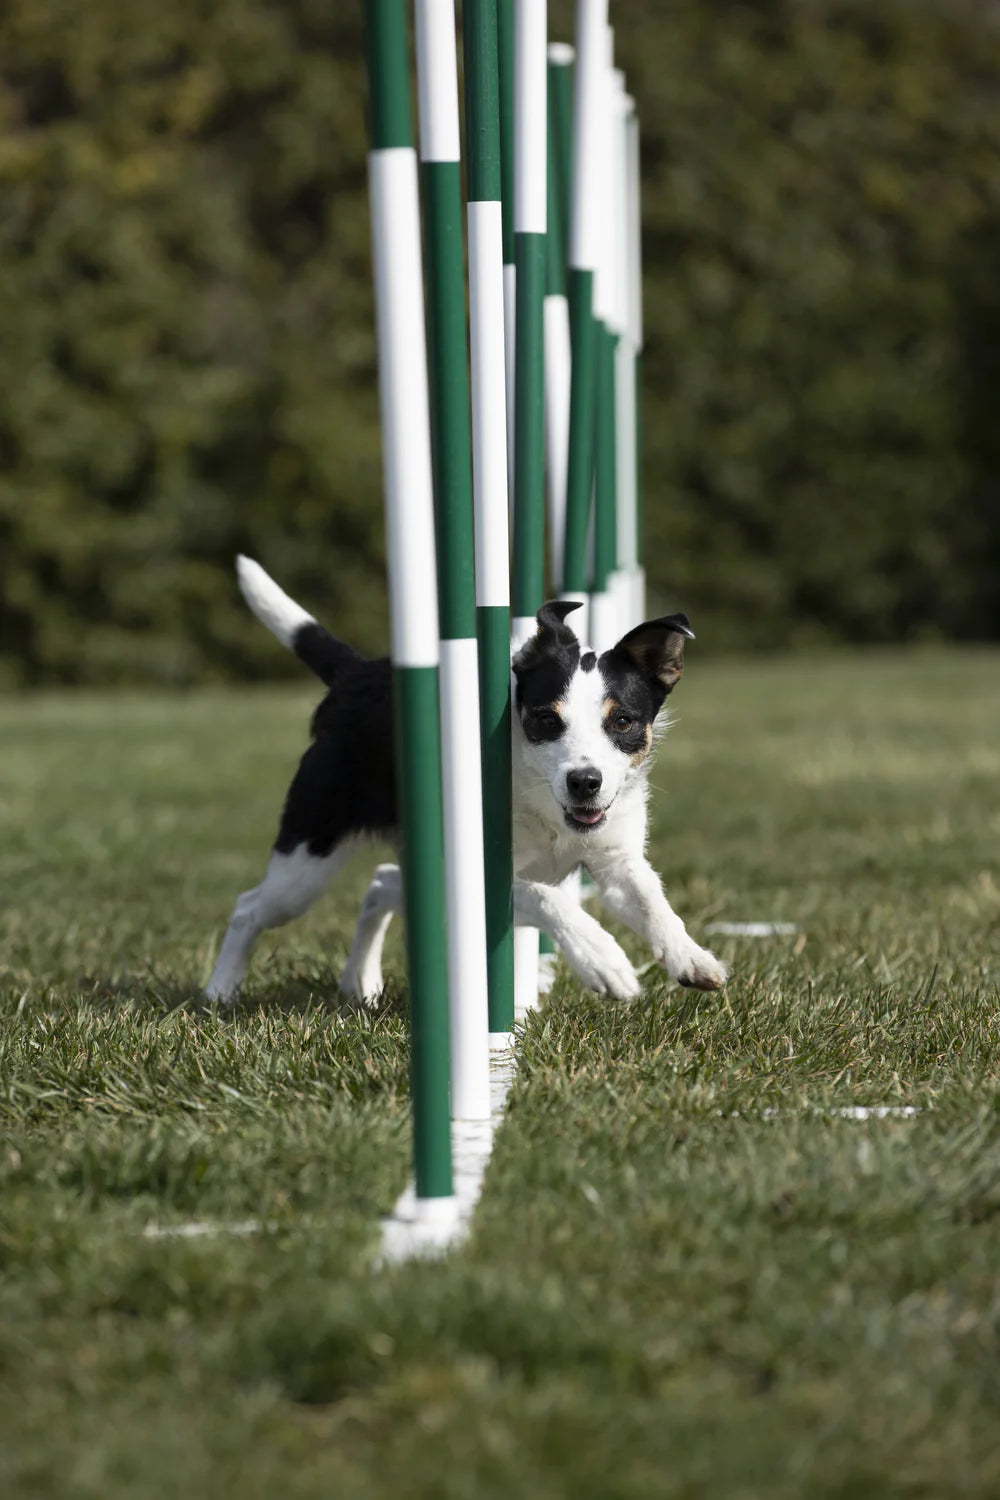 Dog on agility course